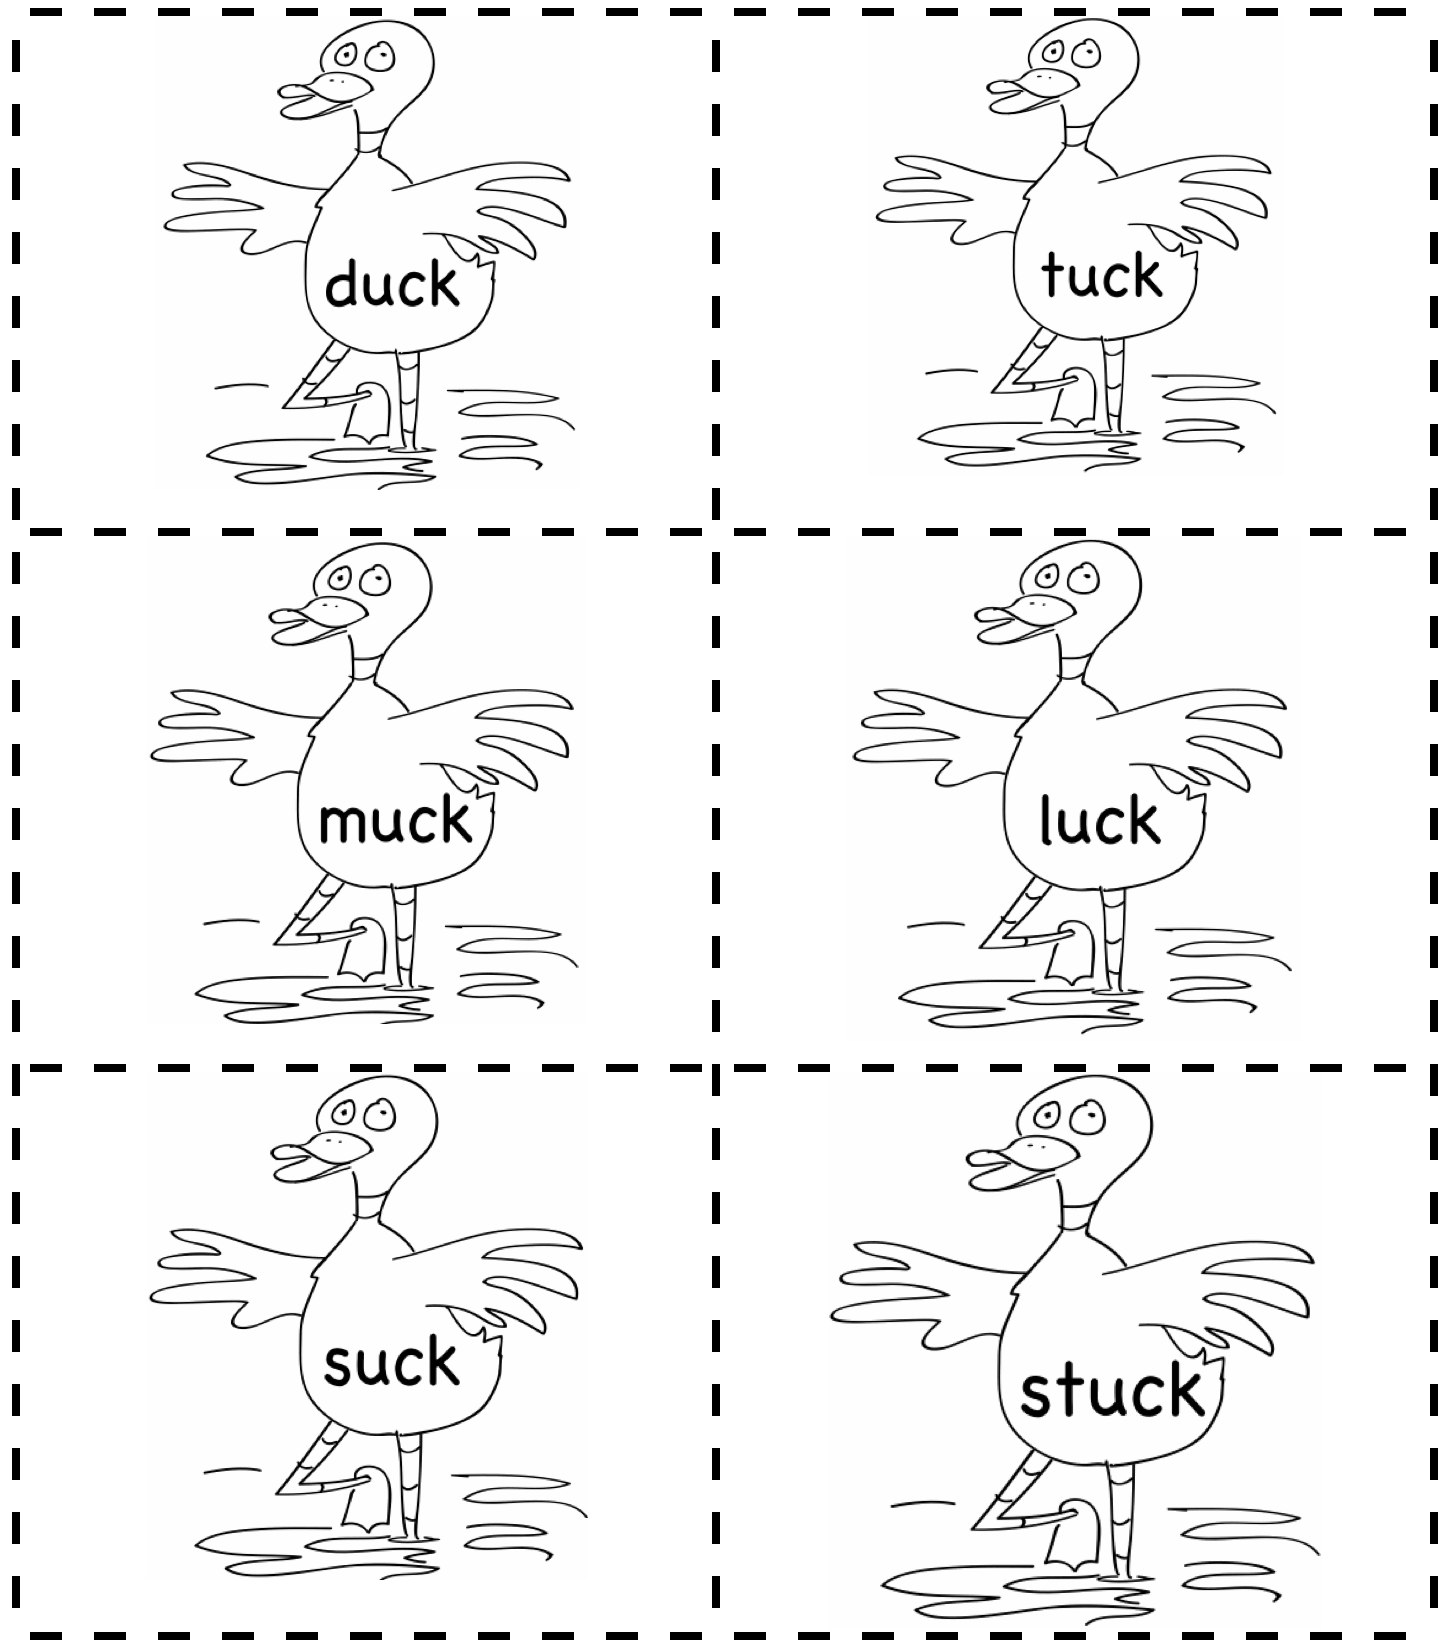 paper-duck-graphics